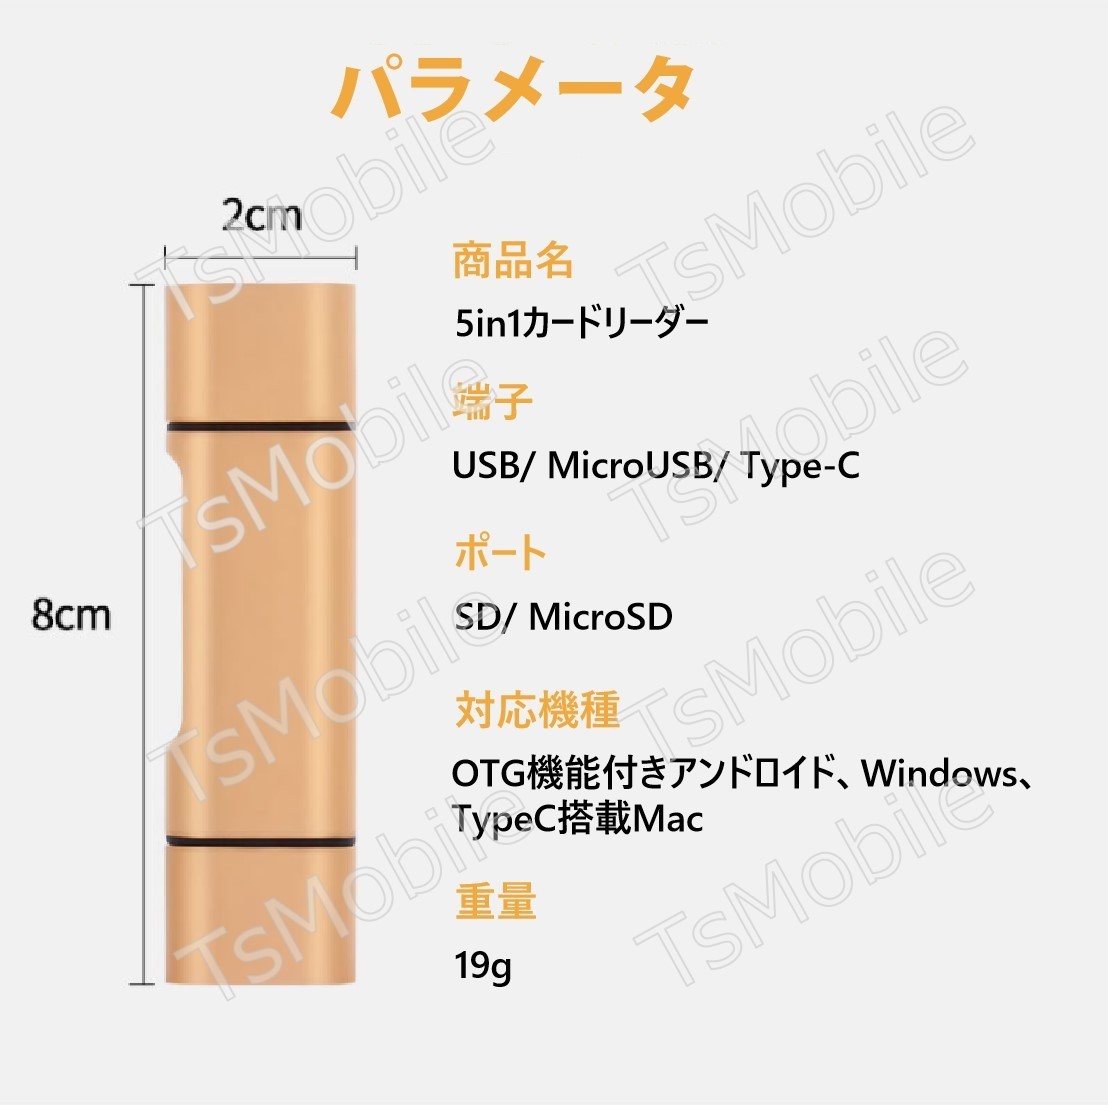 5in1 TypeC USB MicroUSB SD TFカードリーダー OTG変換コネクタ Macbook メモリカードデータ